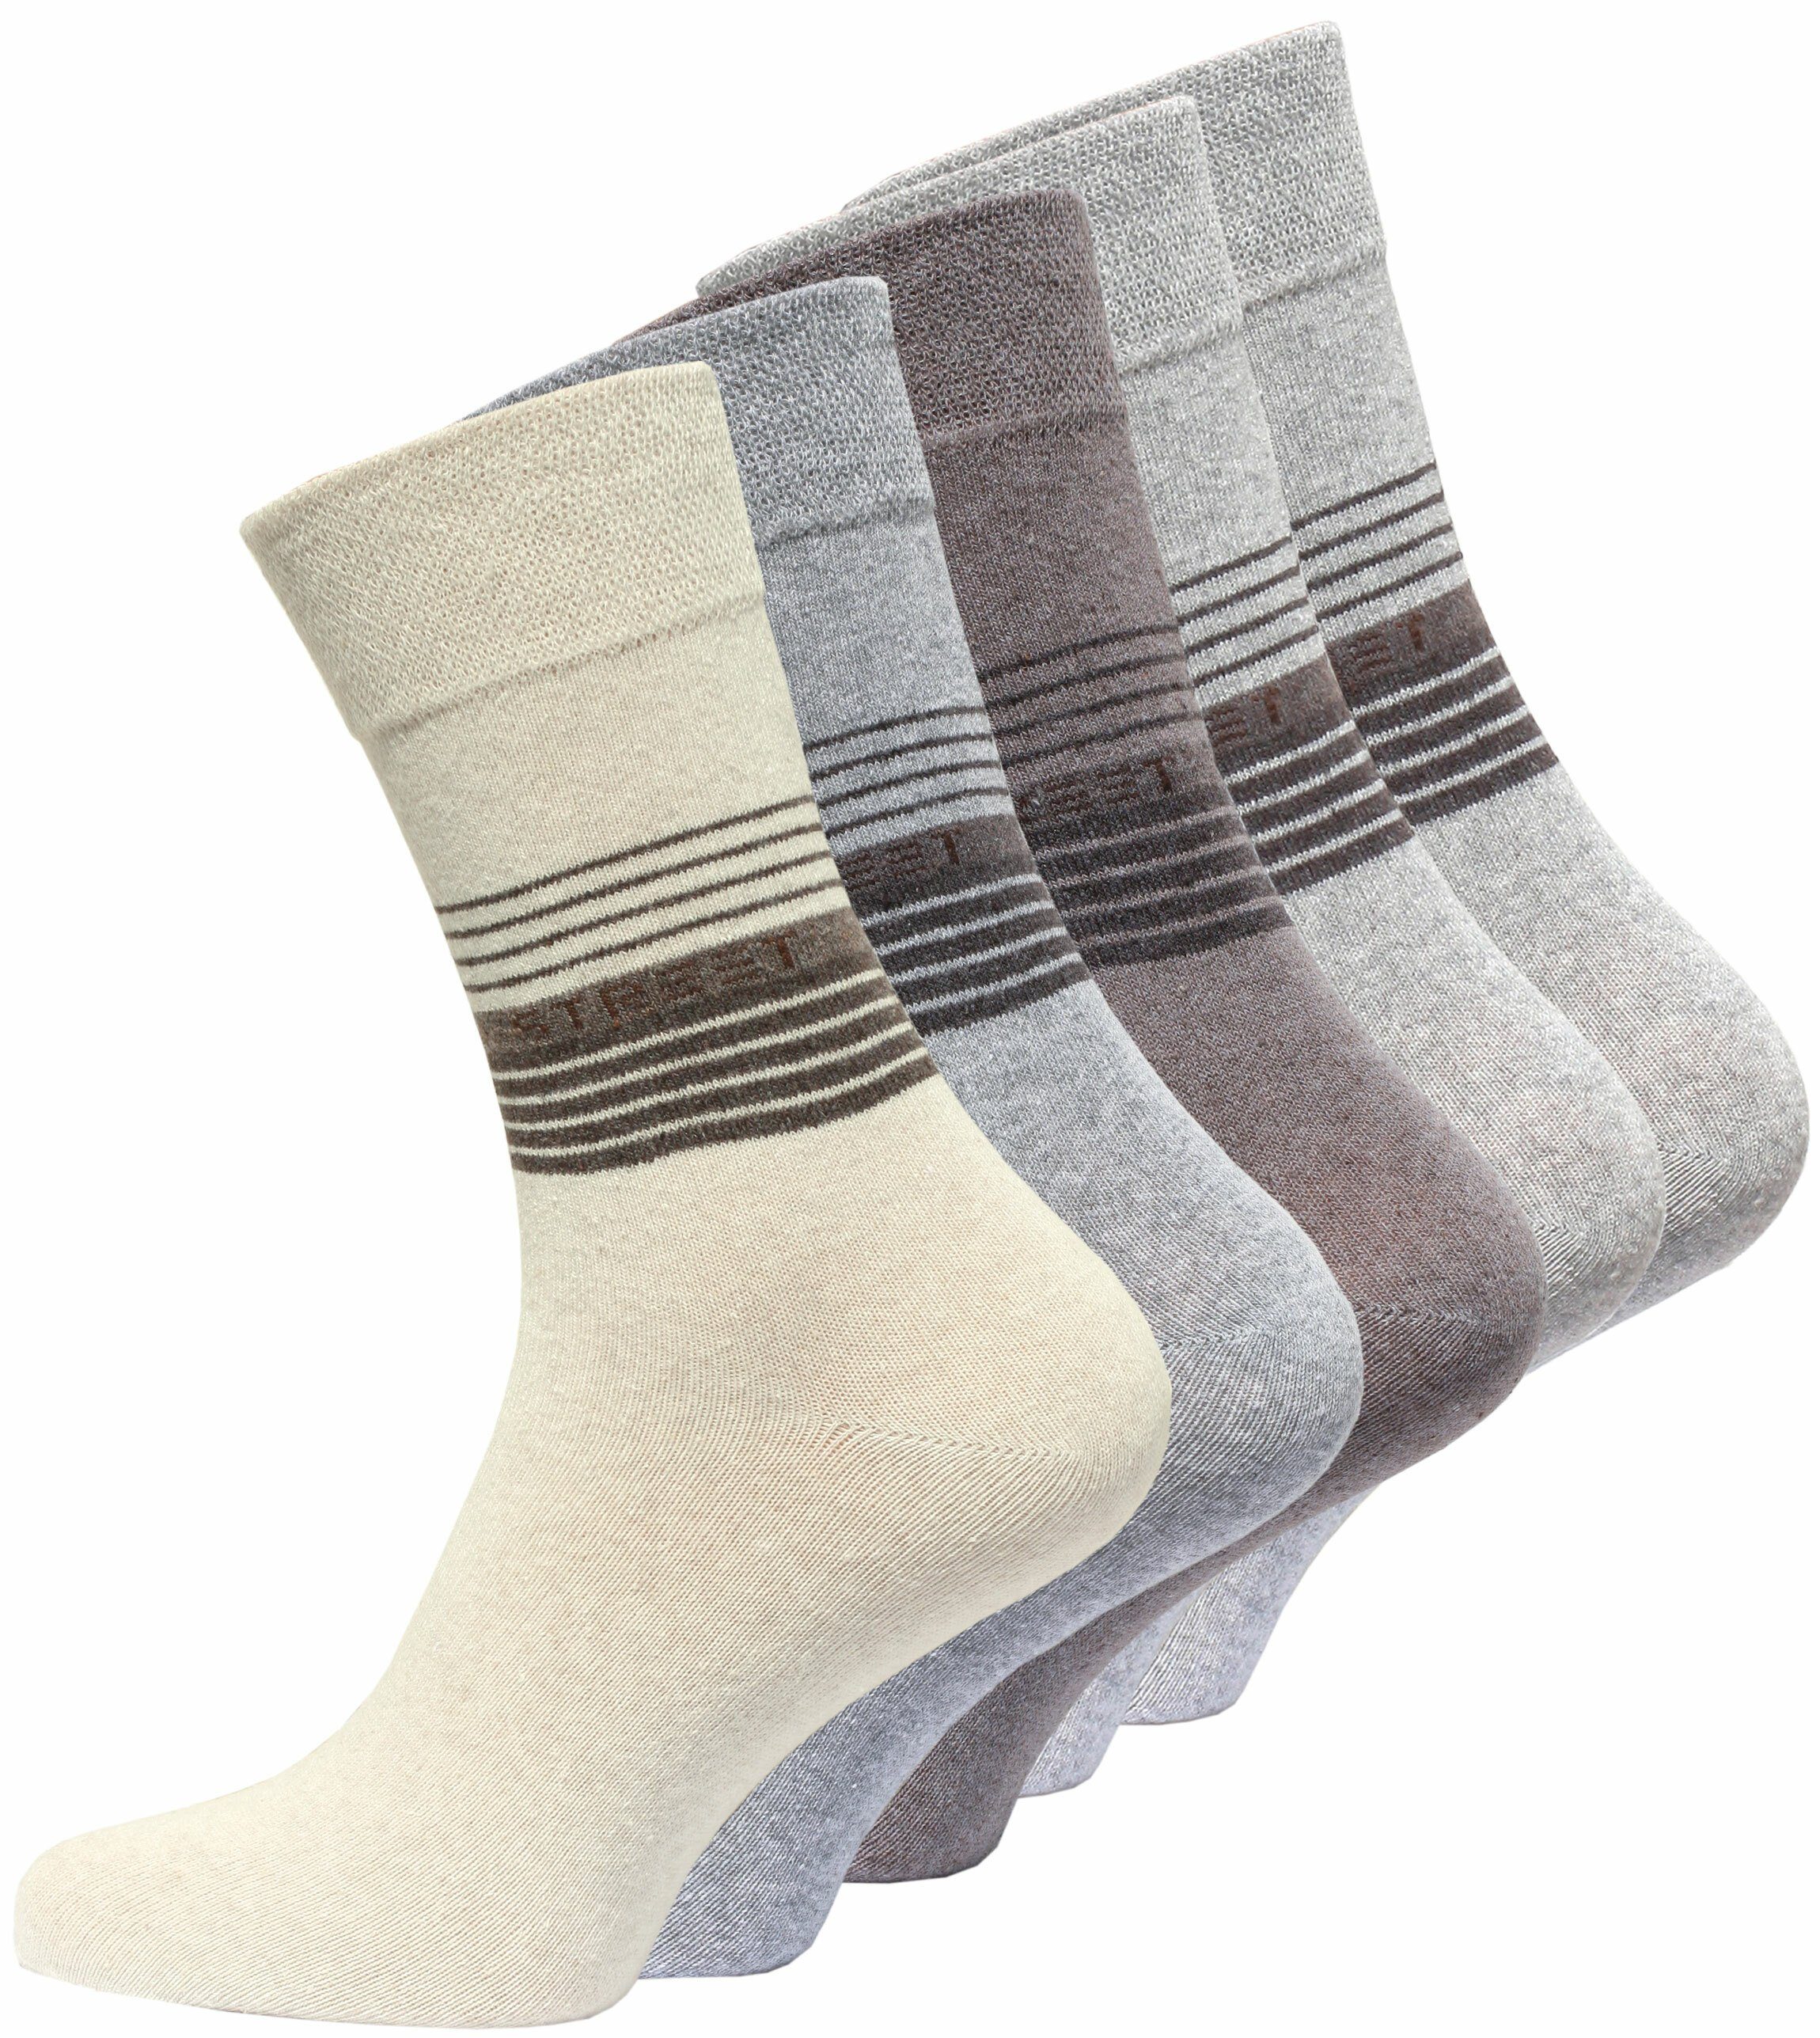 Cotton Prime® Socken (10-Paar) in angenehmer Baumwollqualität